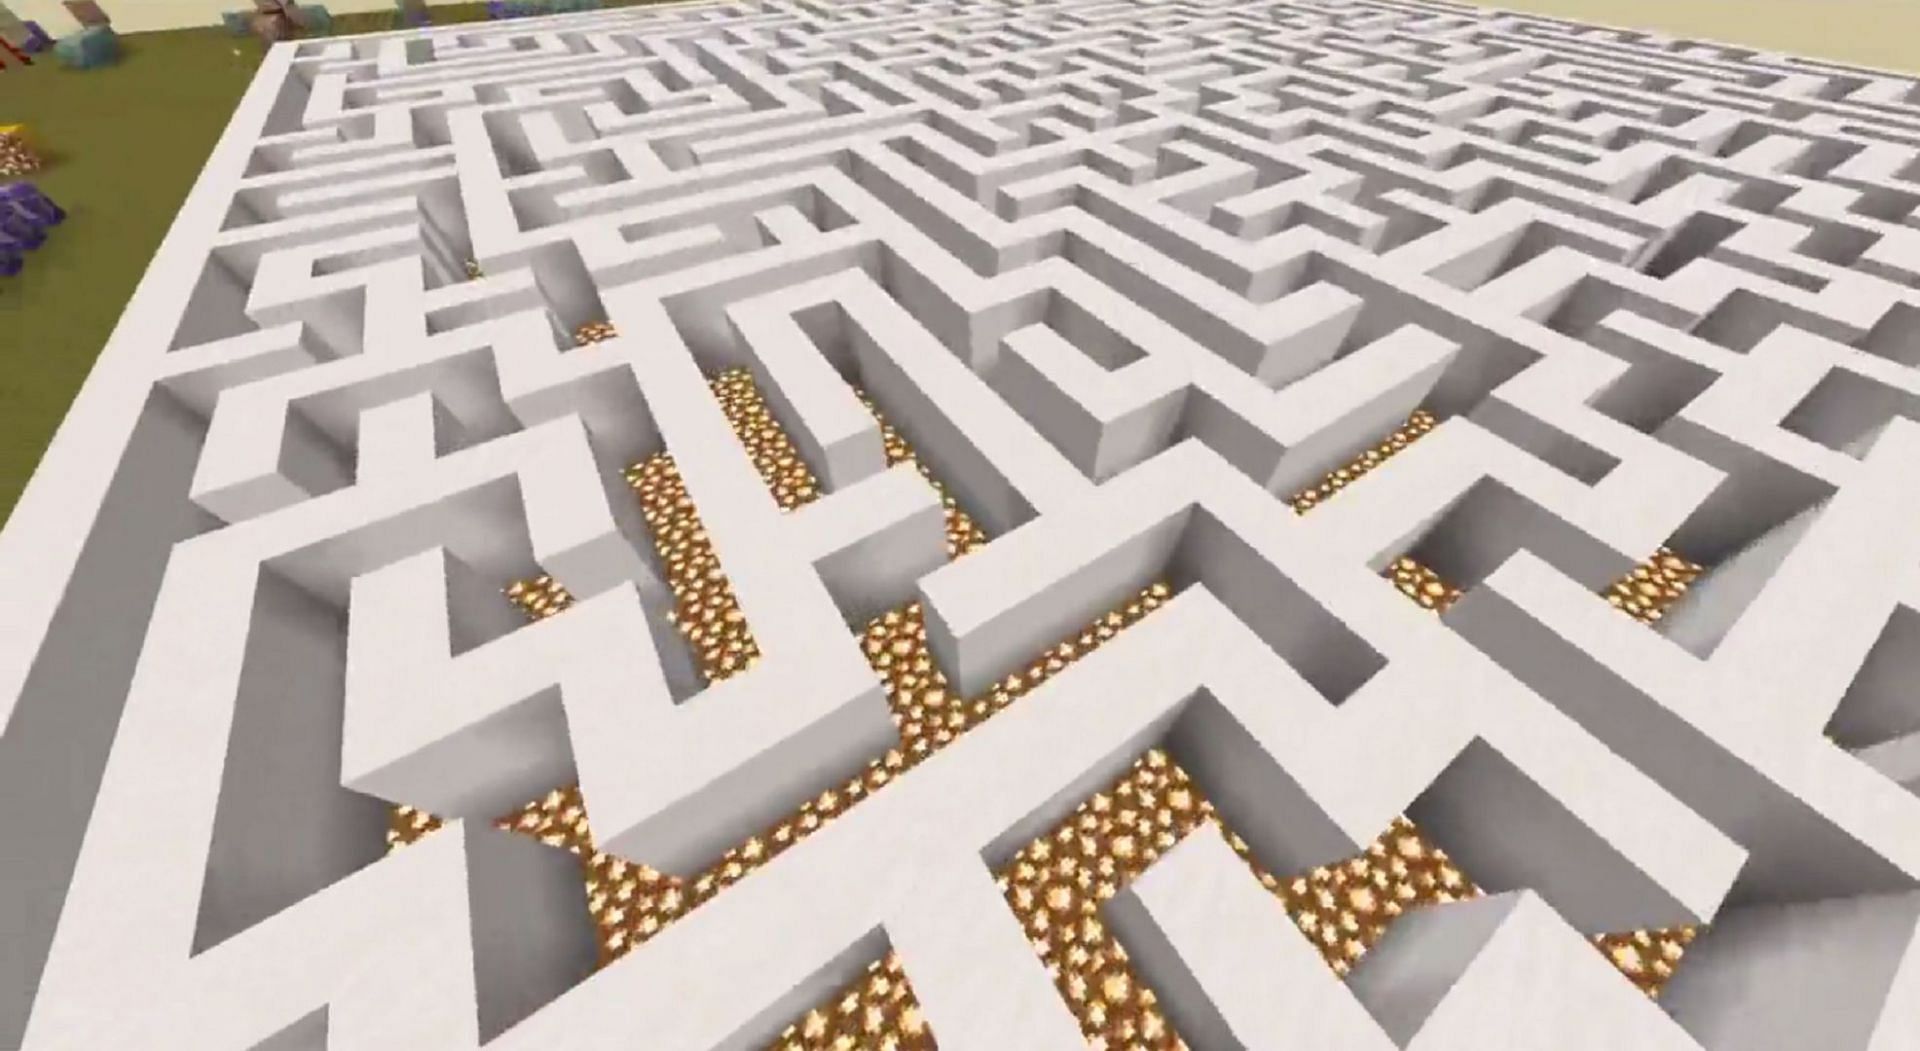 A closer look at the generated maze (Image via Francesco_ita_v/Reddit)